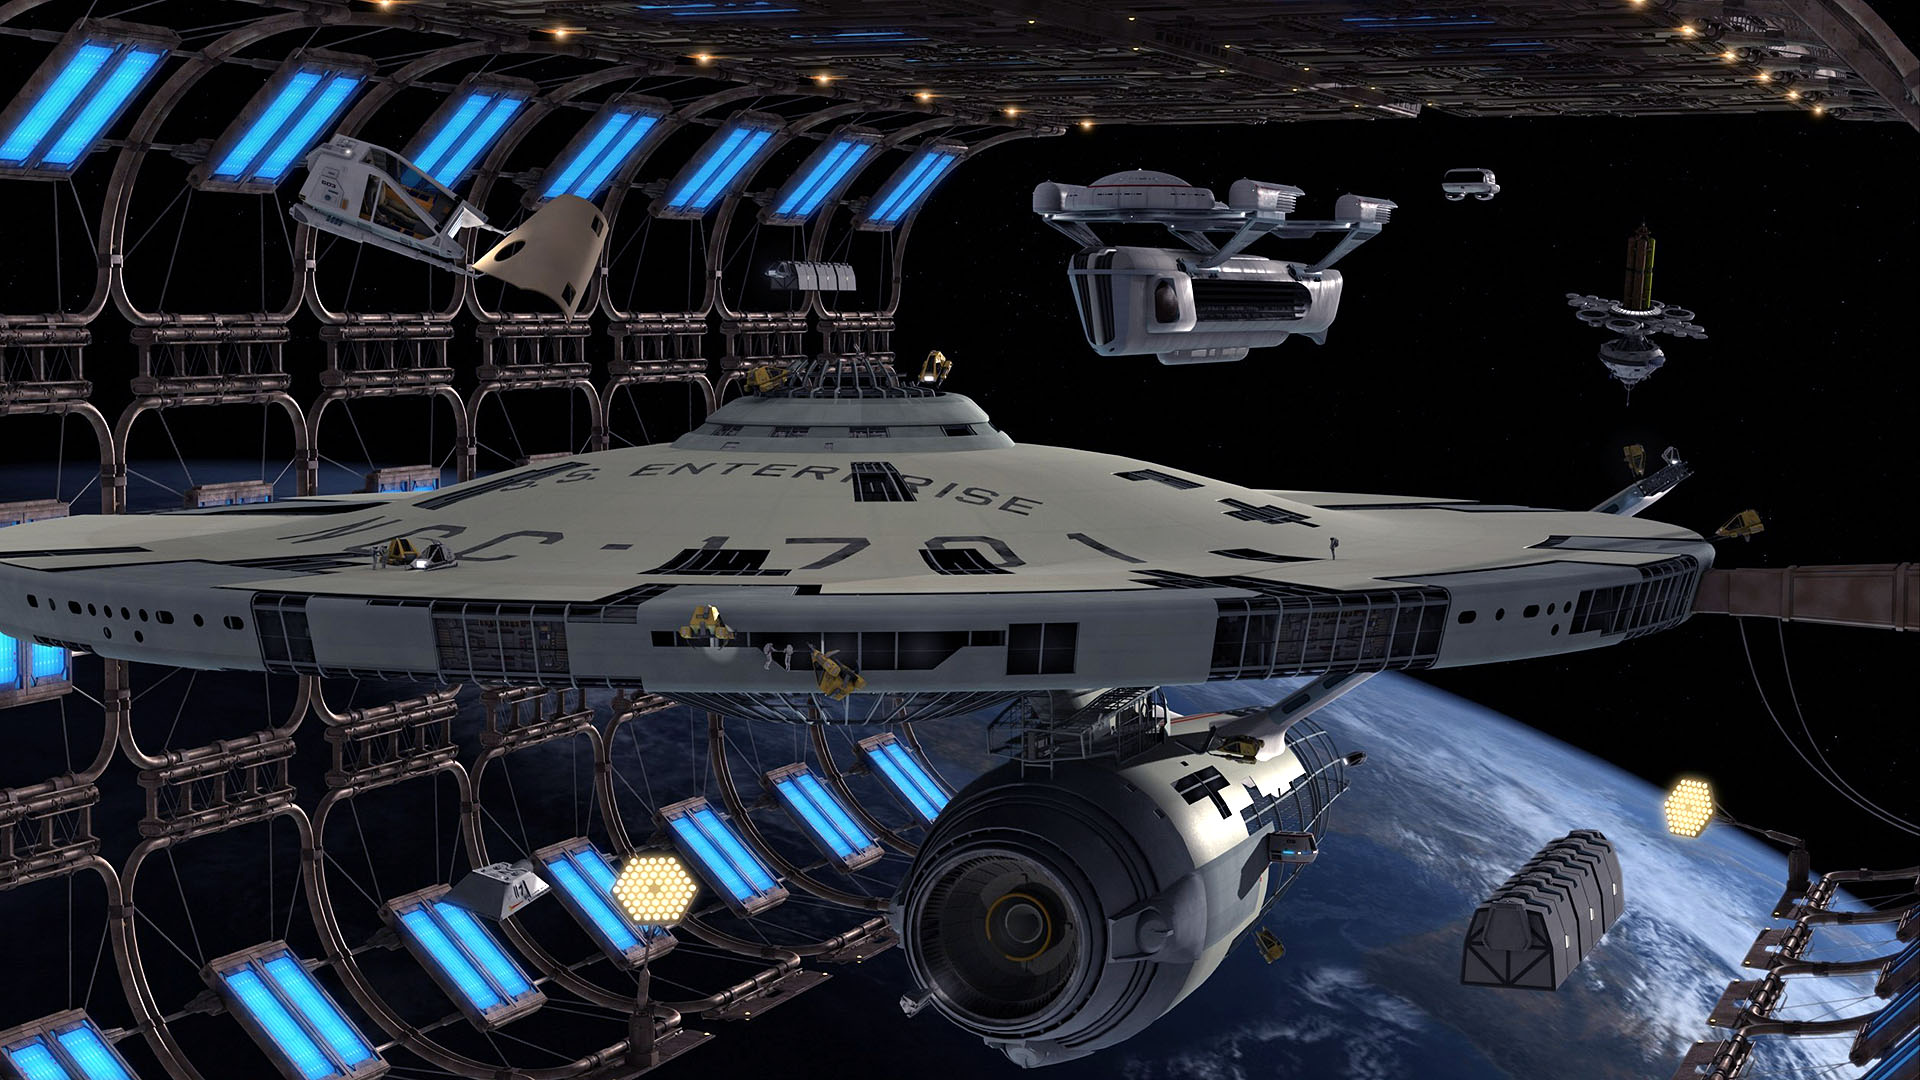 звездный путь, корабли, транспортные средства, USS Enterprise - обои на рабочий стол